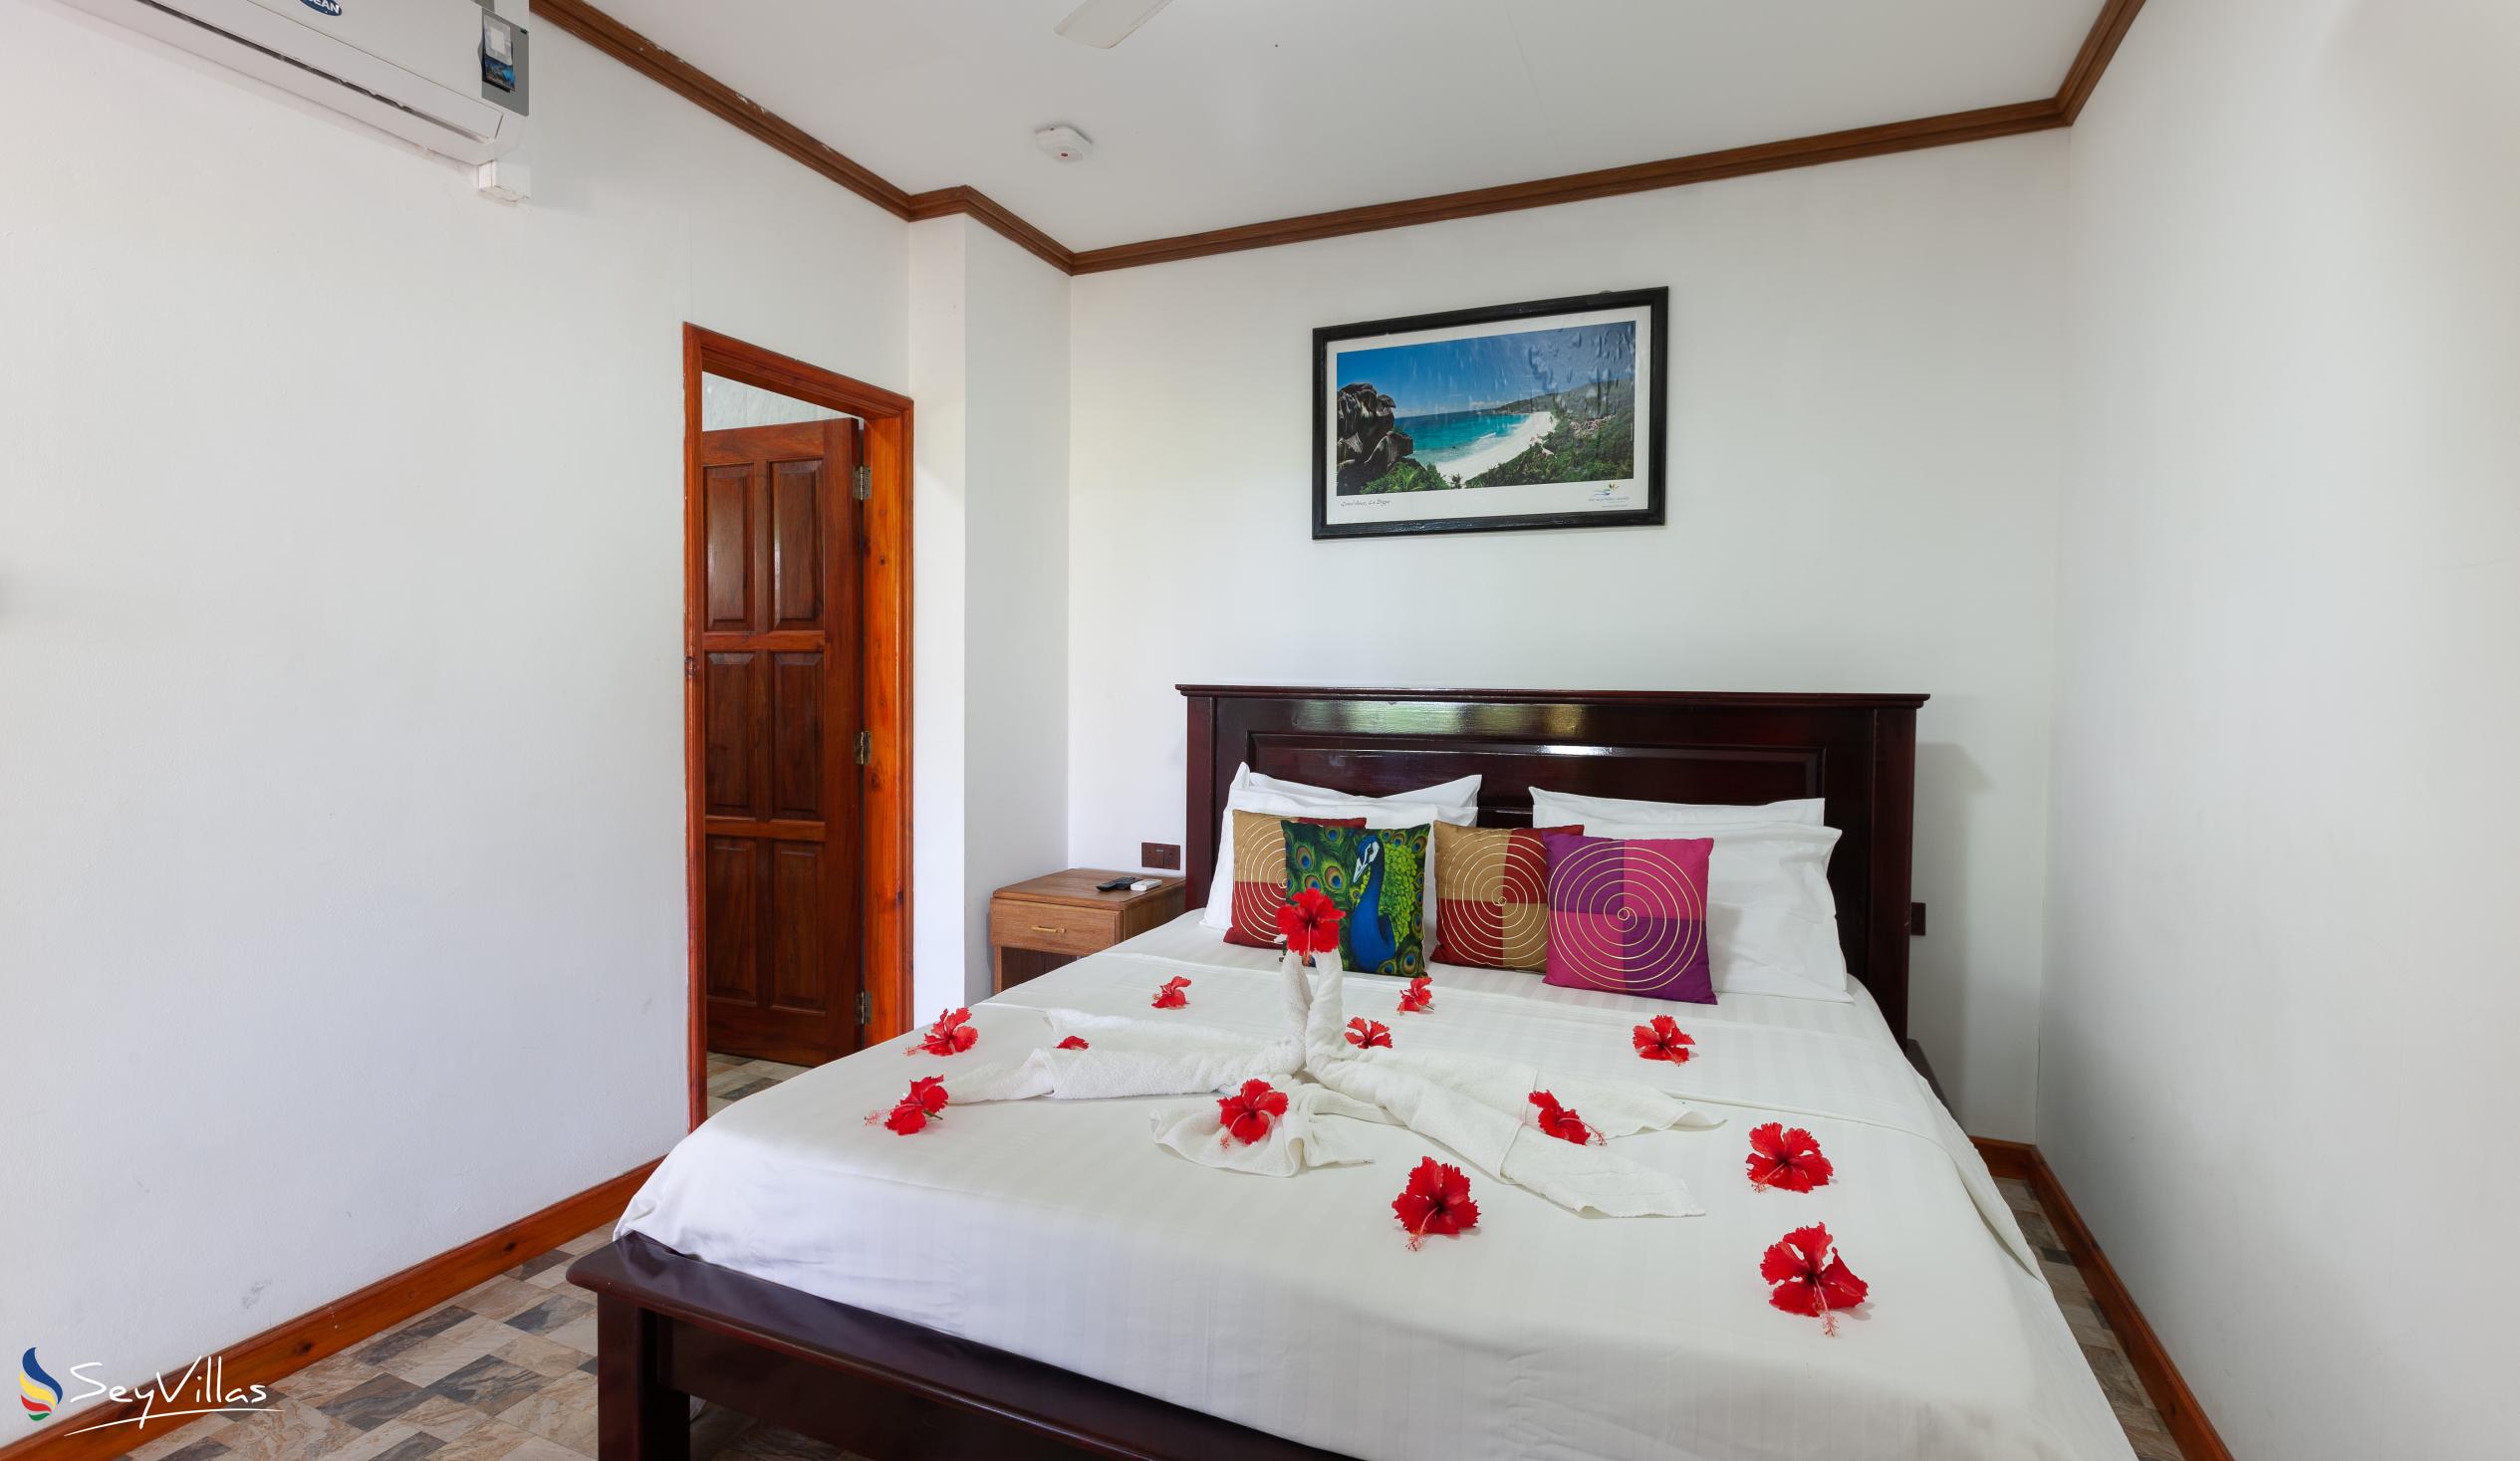 Foto 24: Bwaver Cottage - Doppelzimmer mit Gartenblick - La Digue (Seychellen)